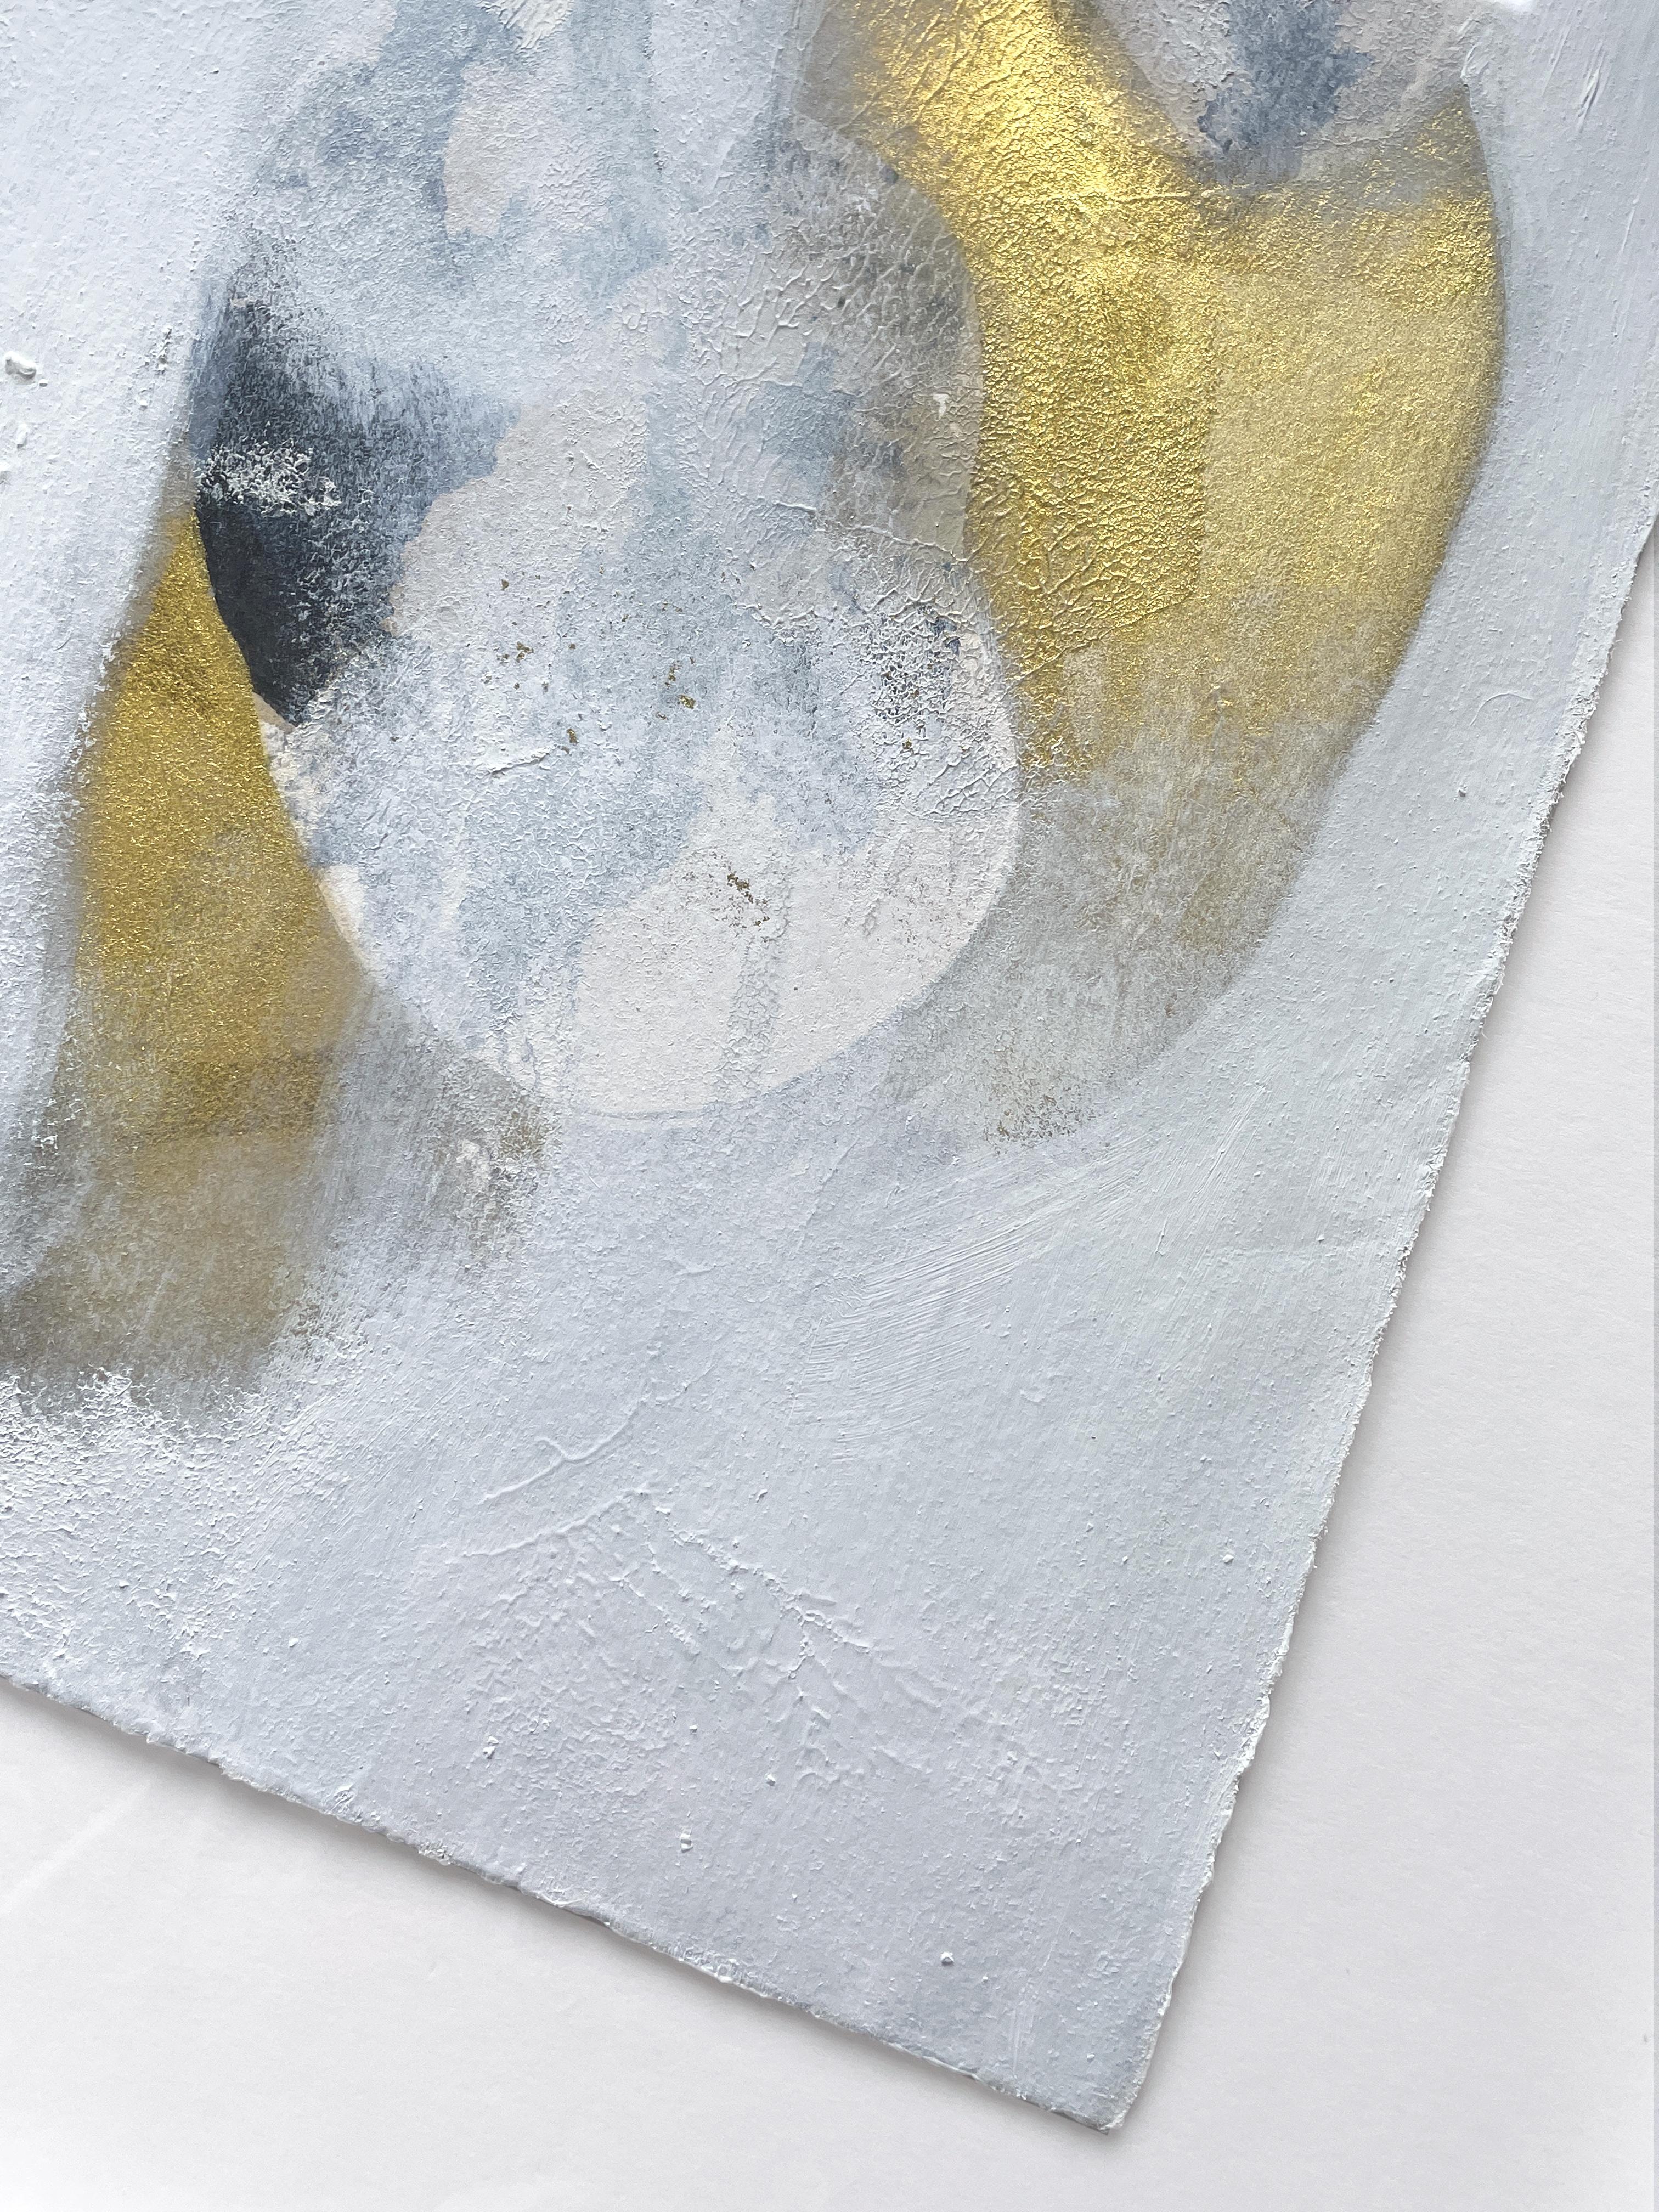 See-Rauch – Painting von Joanna Cutri